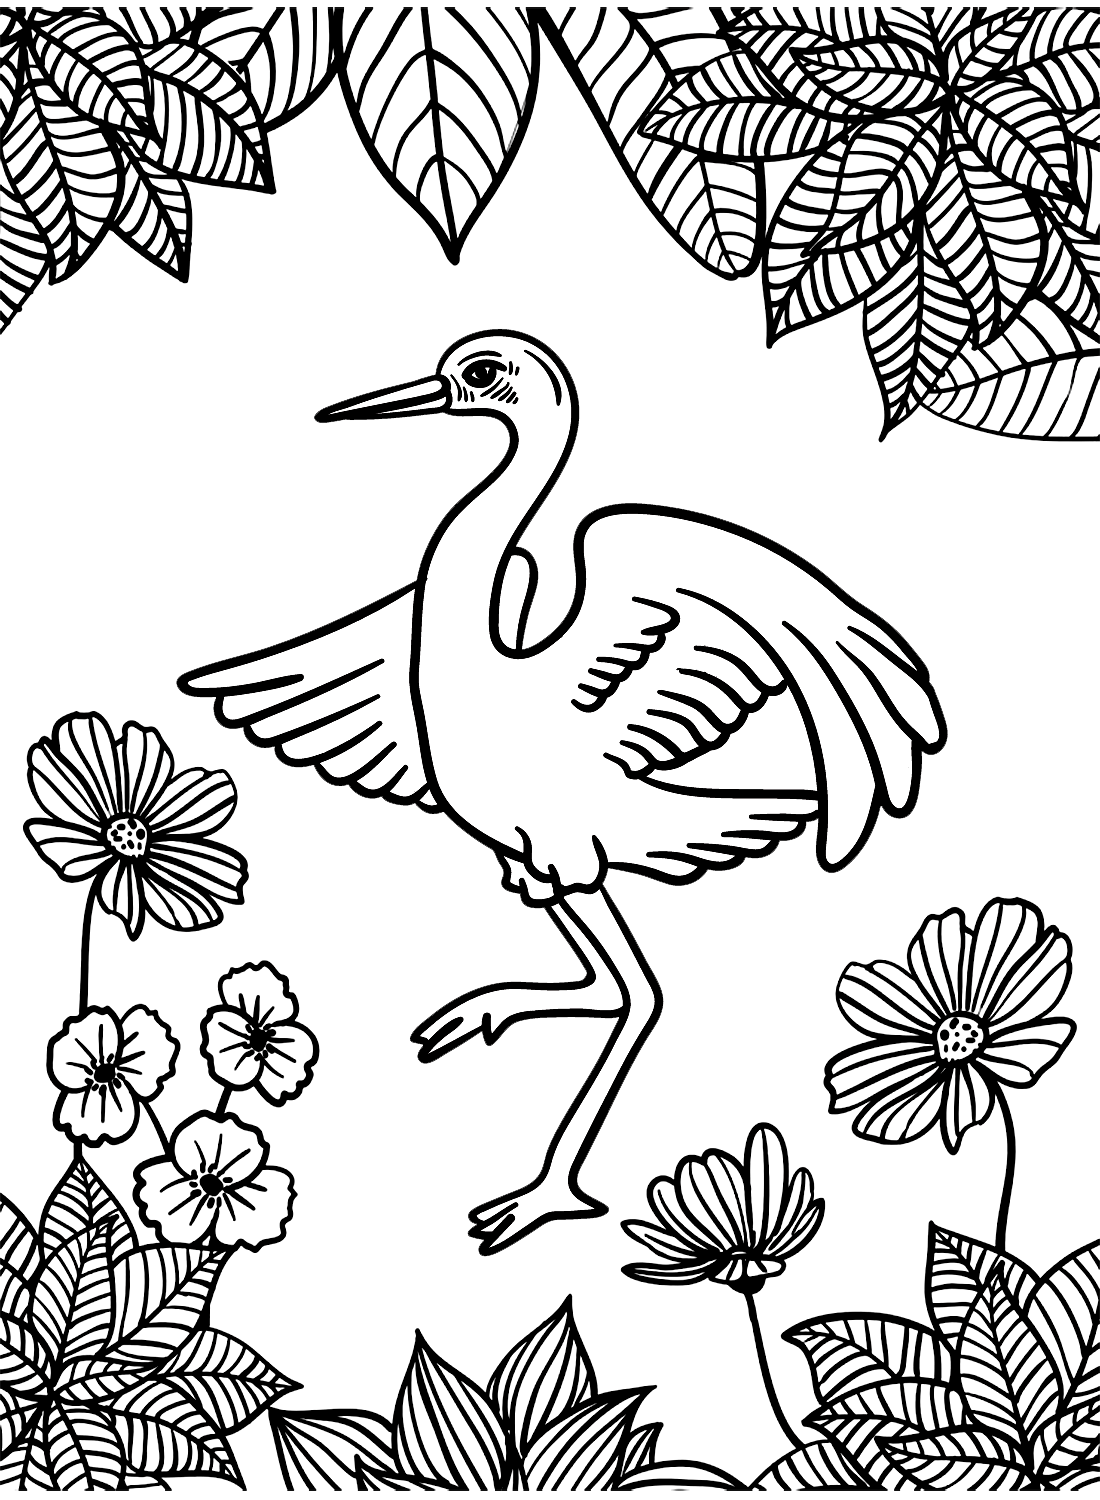 Kranich-Vogel-Tanz von Crane Bird